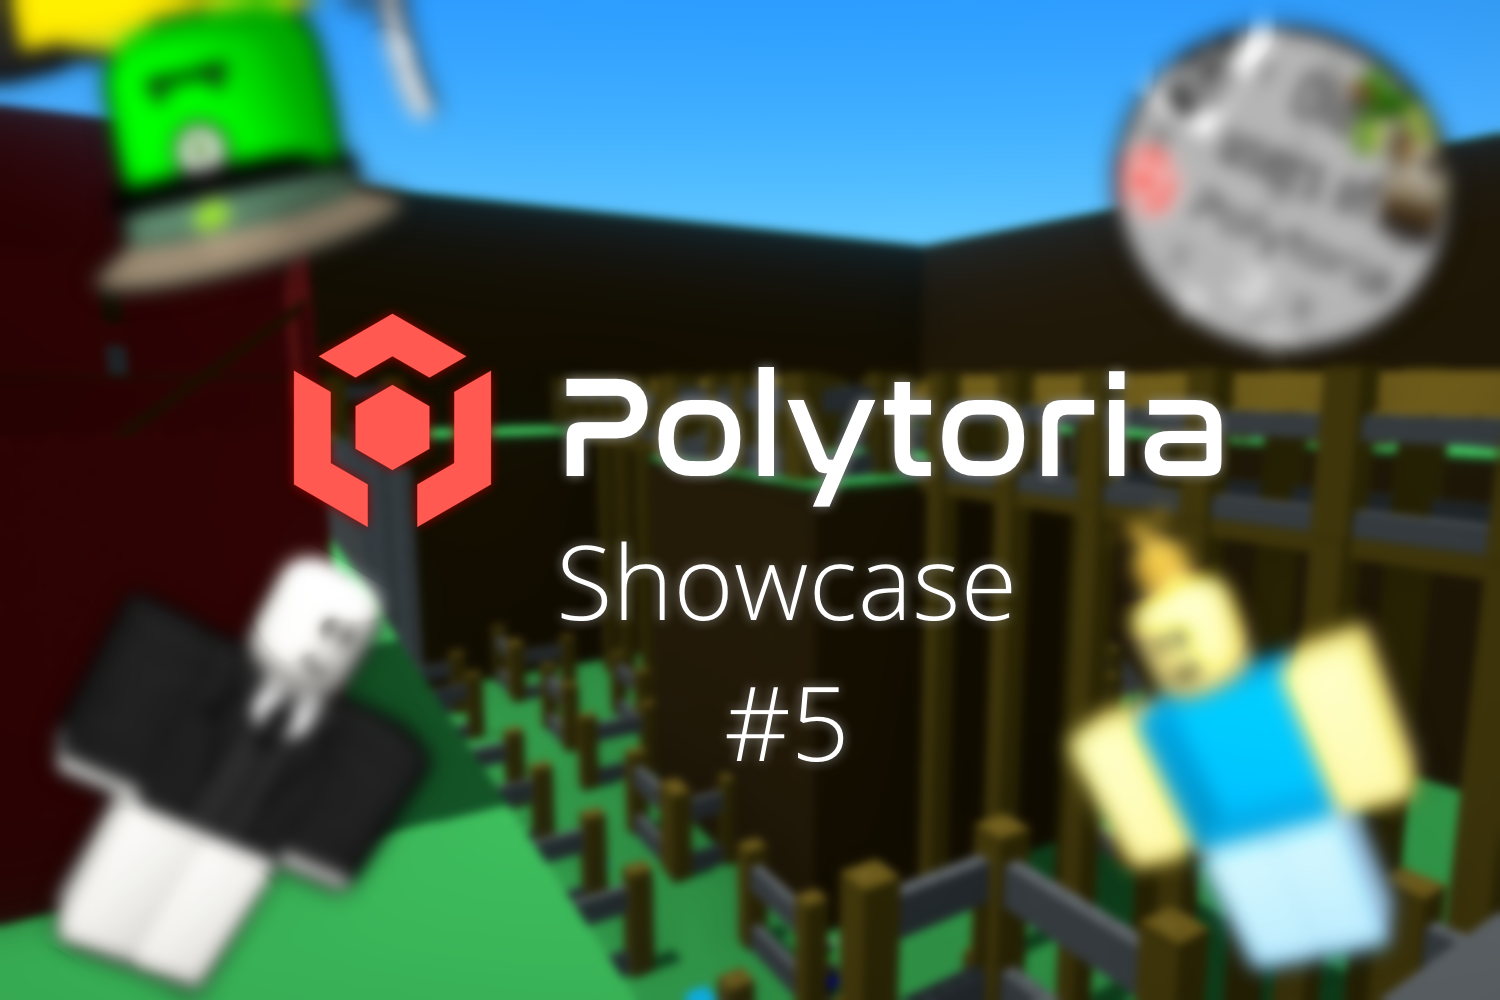 Polytoria Showcase #5